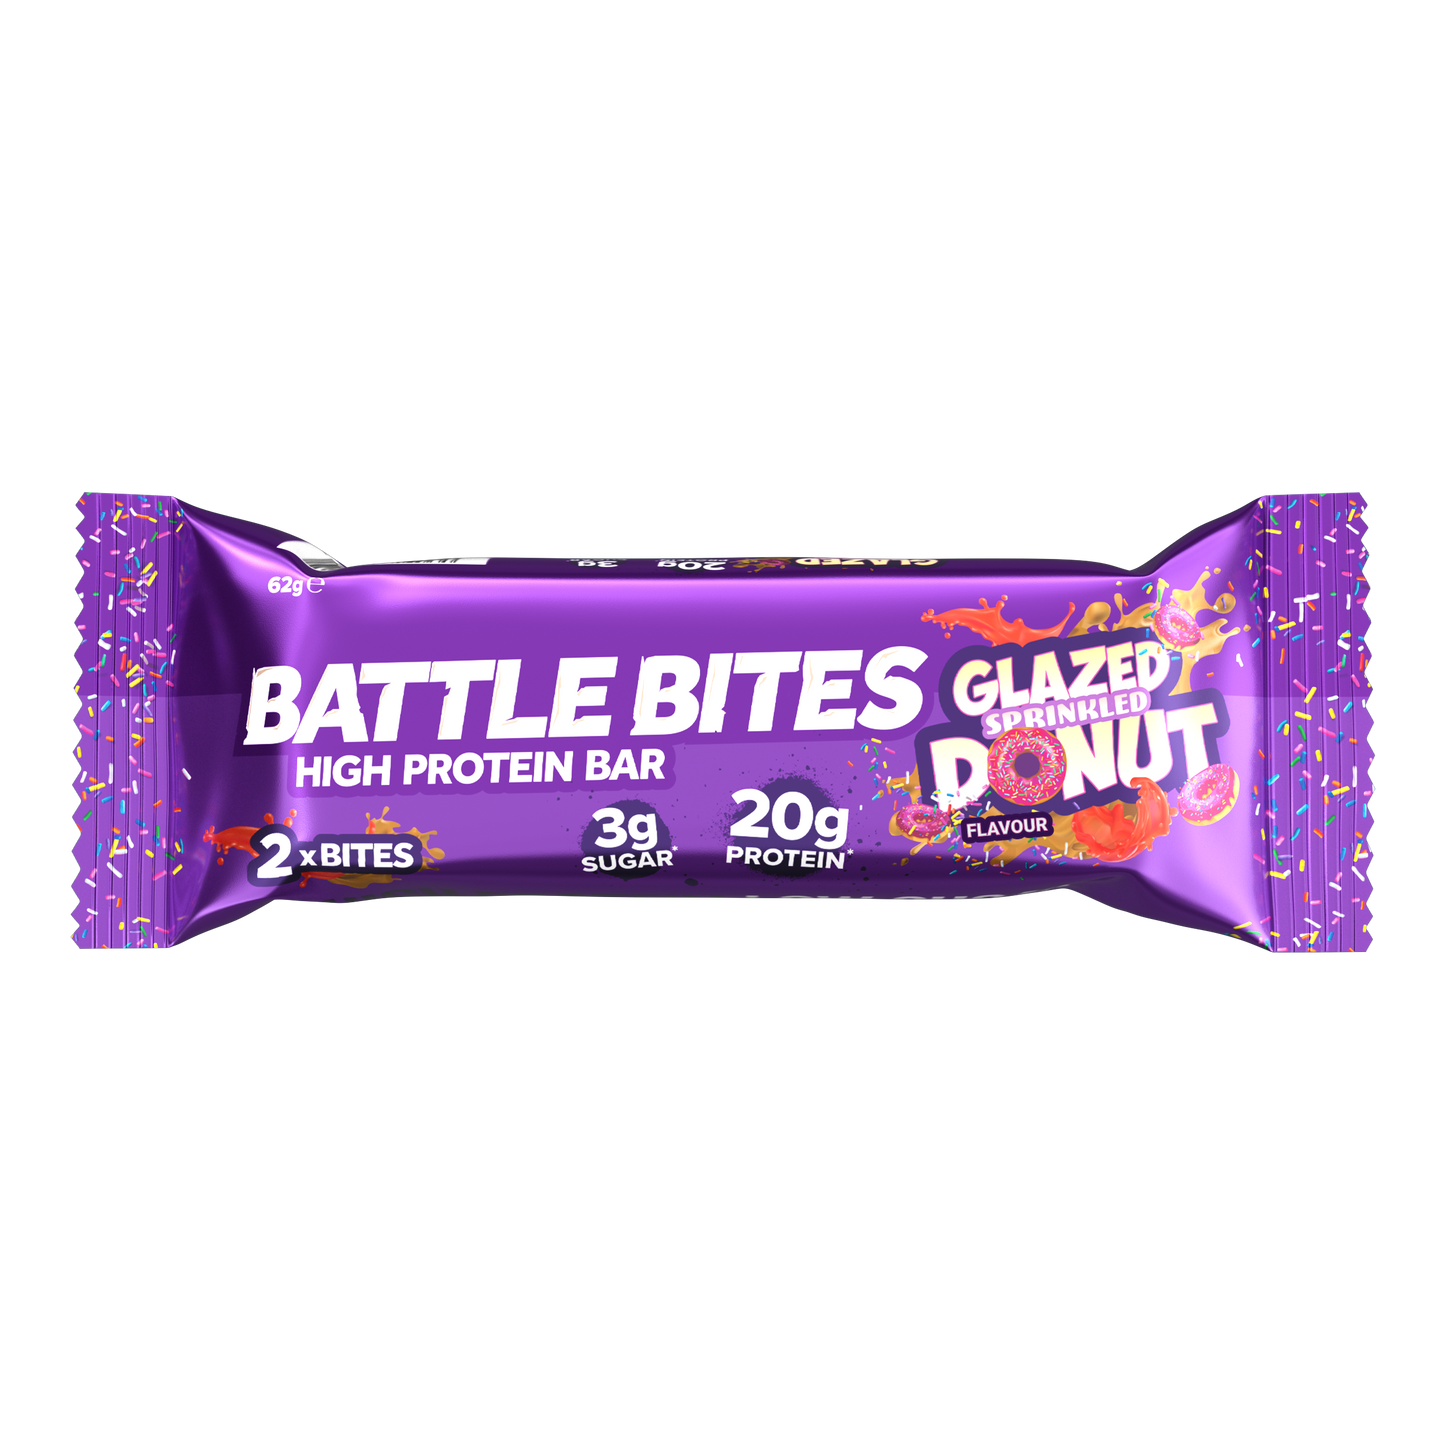 Battle Bites Glasierter bestreuter Donut 62g x 12